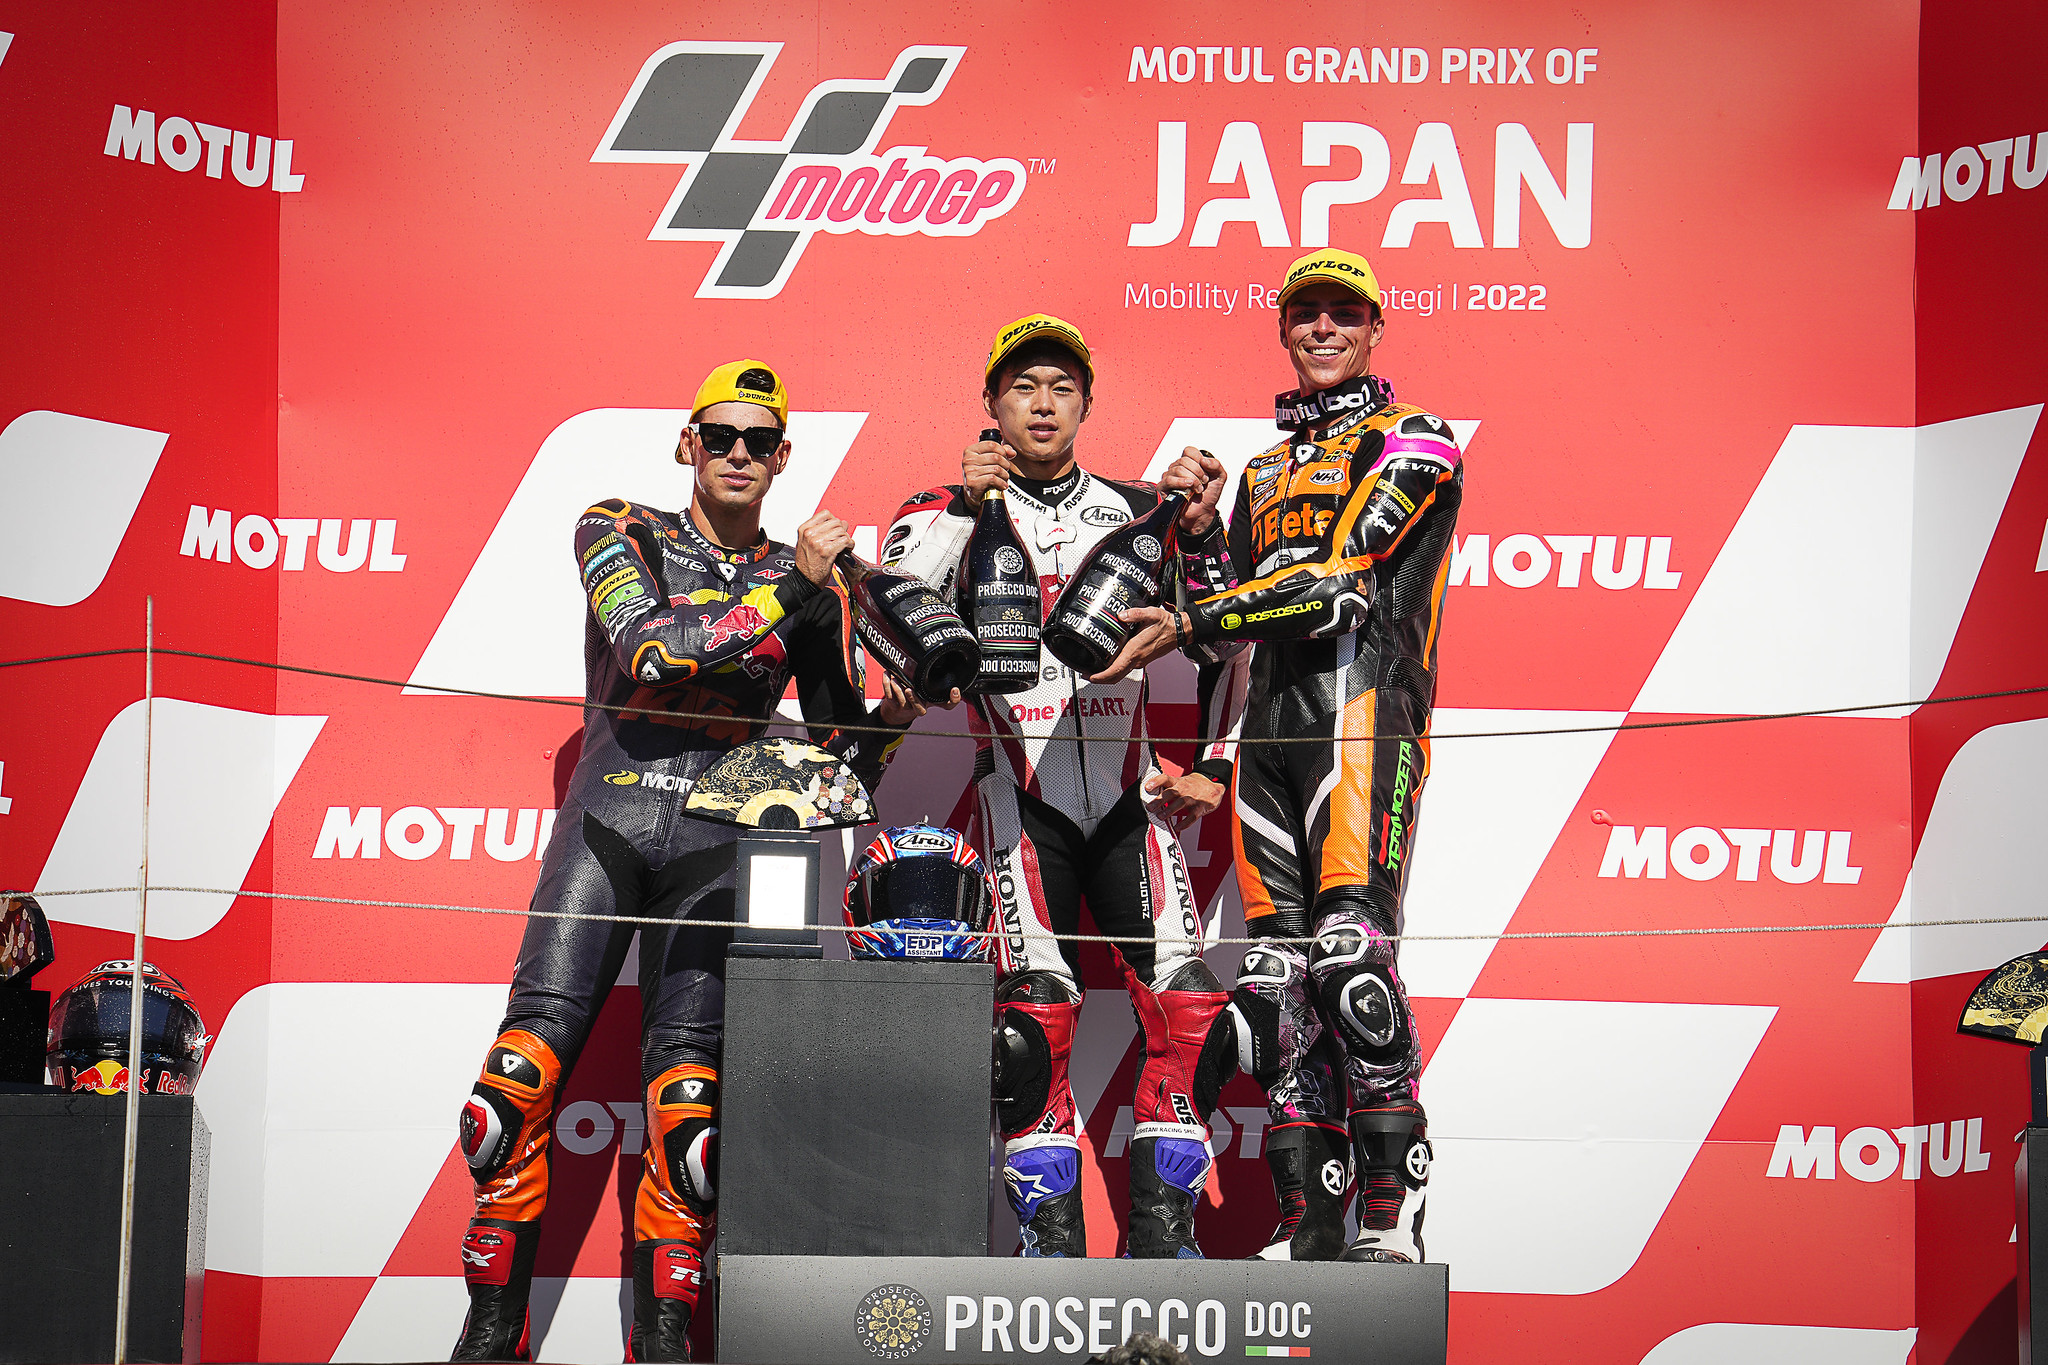 Moto2 podium